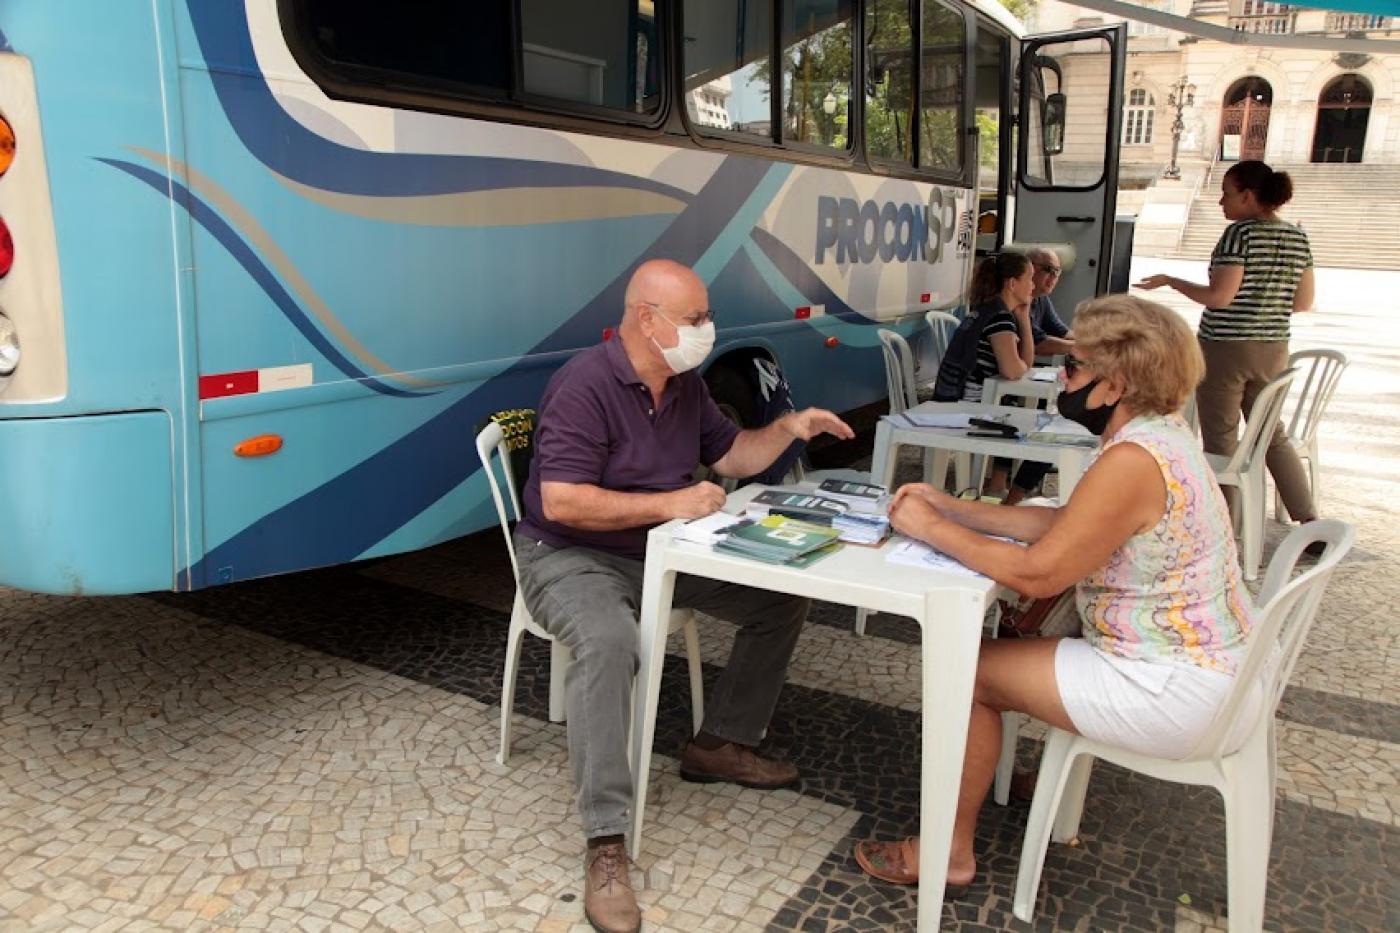 ônibus do procon parado na praça e um homem atendendo uma mulher, com ambos sentados à mesa. #paratodosverem